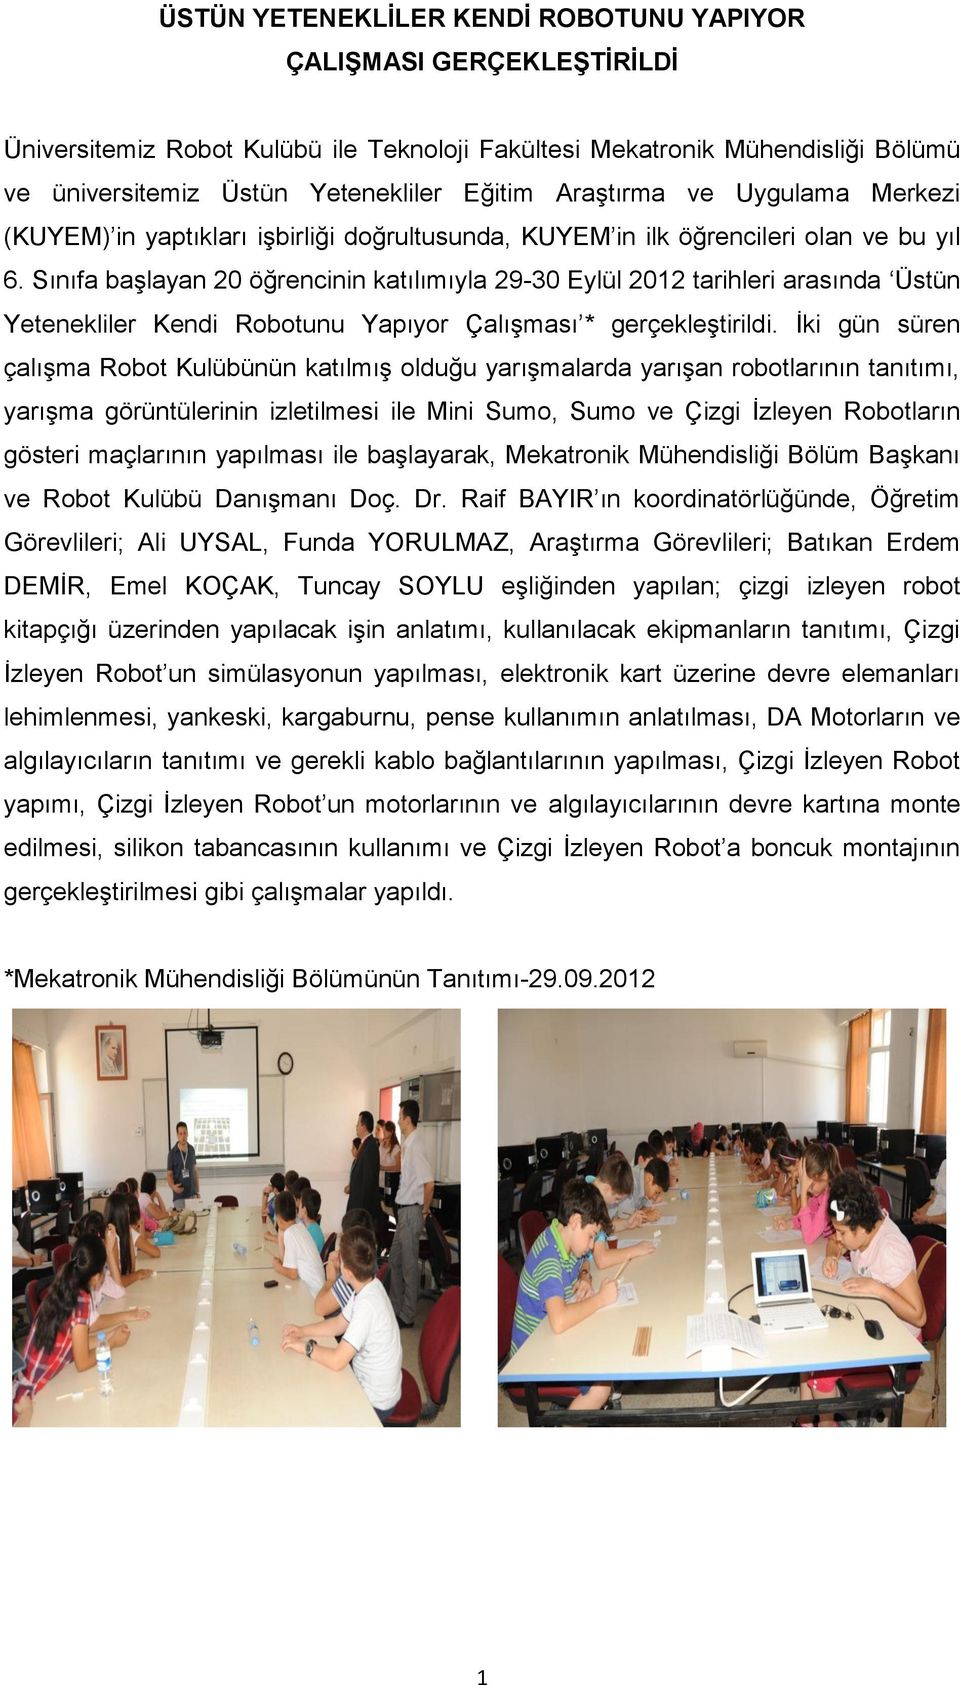 Sınıfa başlayan 20 öğrencinin katılımıyla 29-30 Eylül 2012 tarihleri arasında Üstün Yetenekliler Kendi Robotunu Yapıyor Çalışması * gerçekleştirildi.